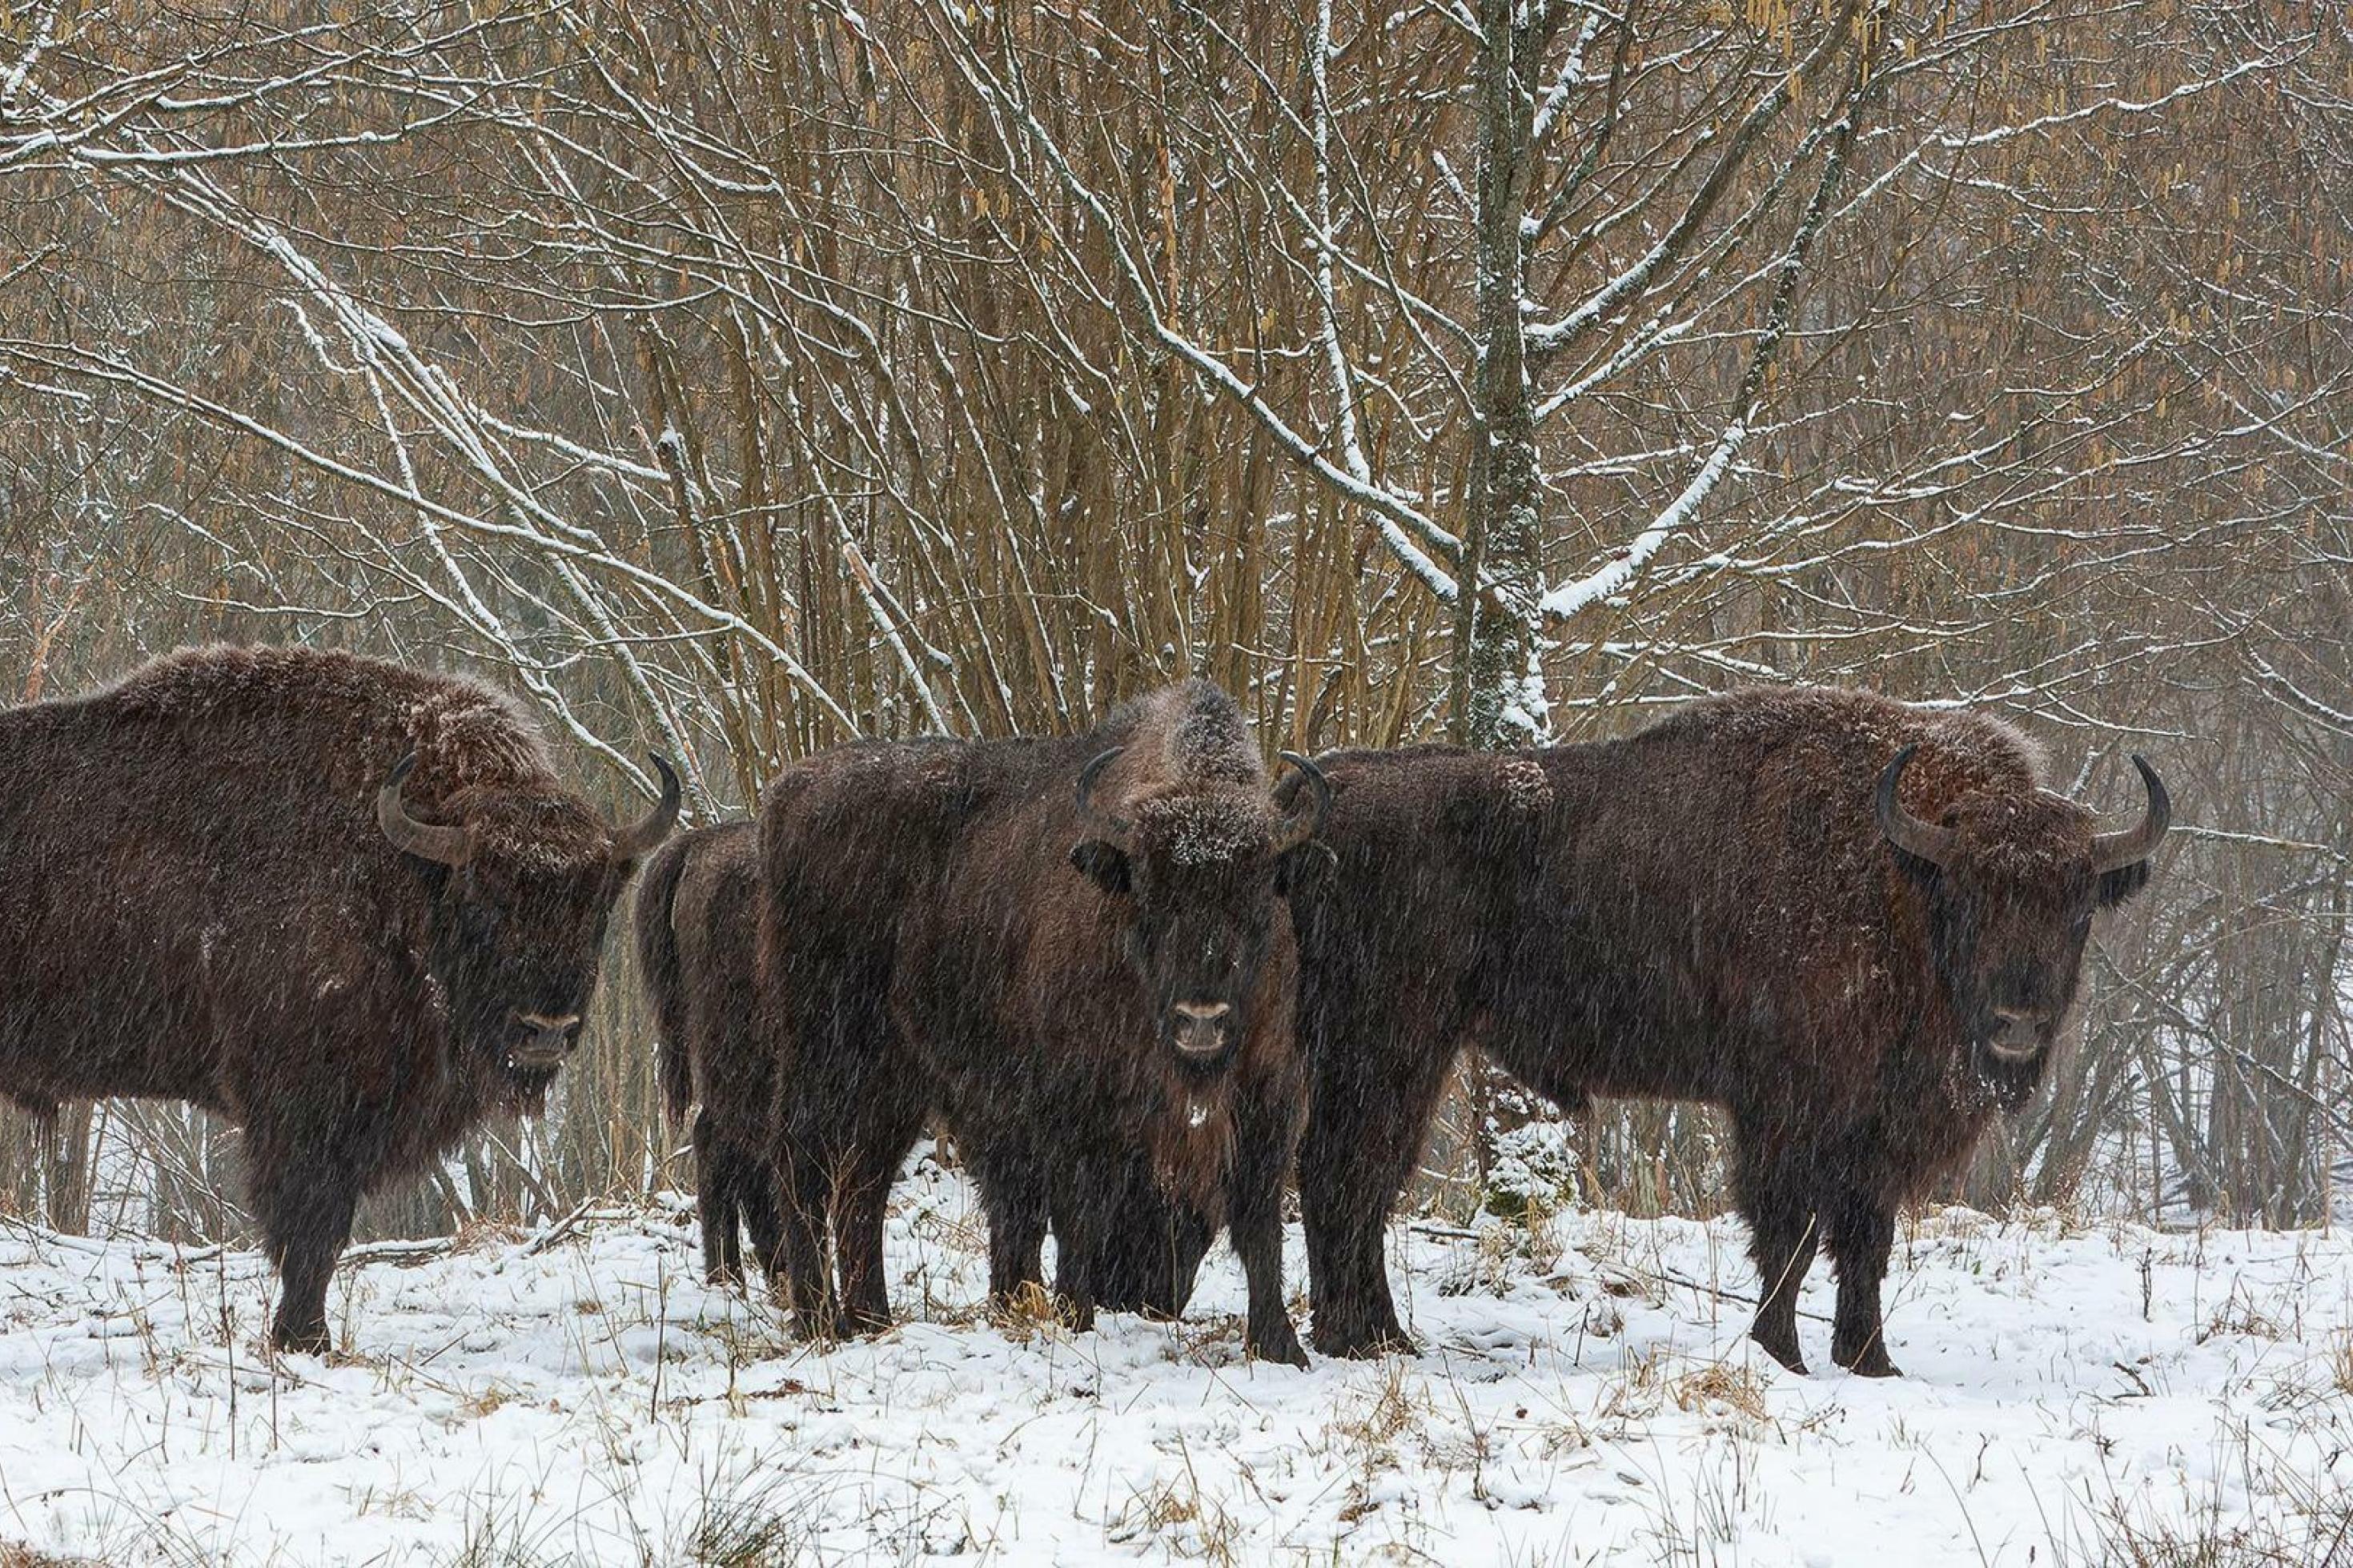 Drei Wisente, große, braune, büffelähnliche Tiere stehen im Schnee in der Landschaft.